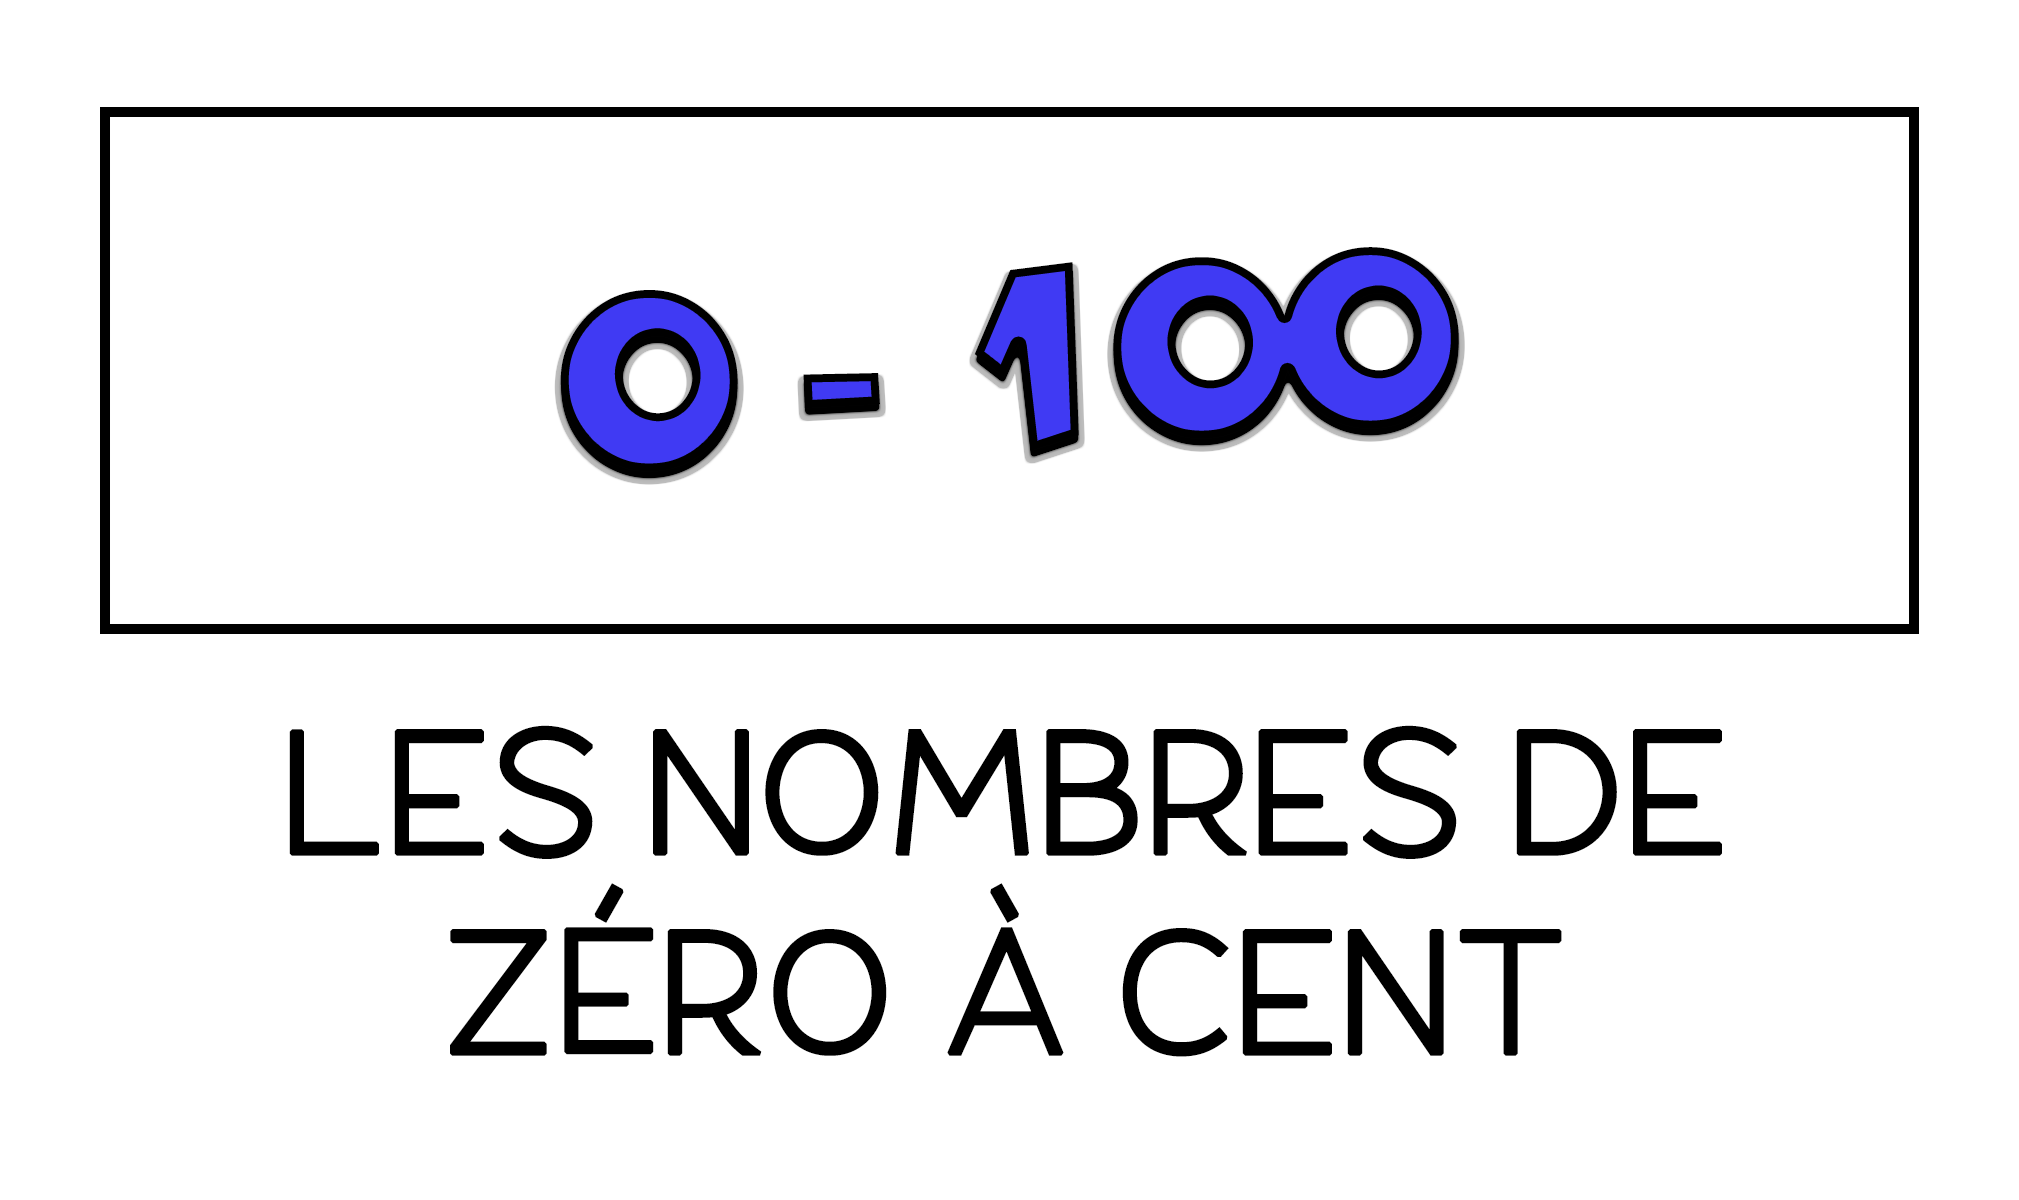 Los números de 0 a 100 en francés